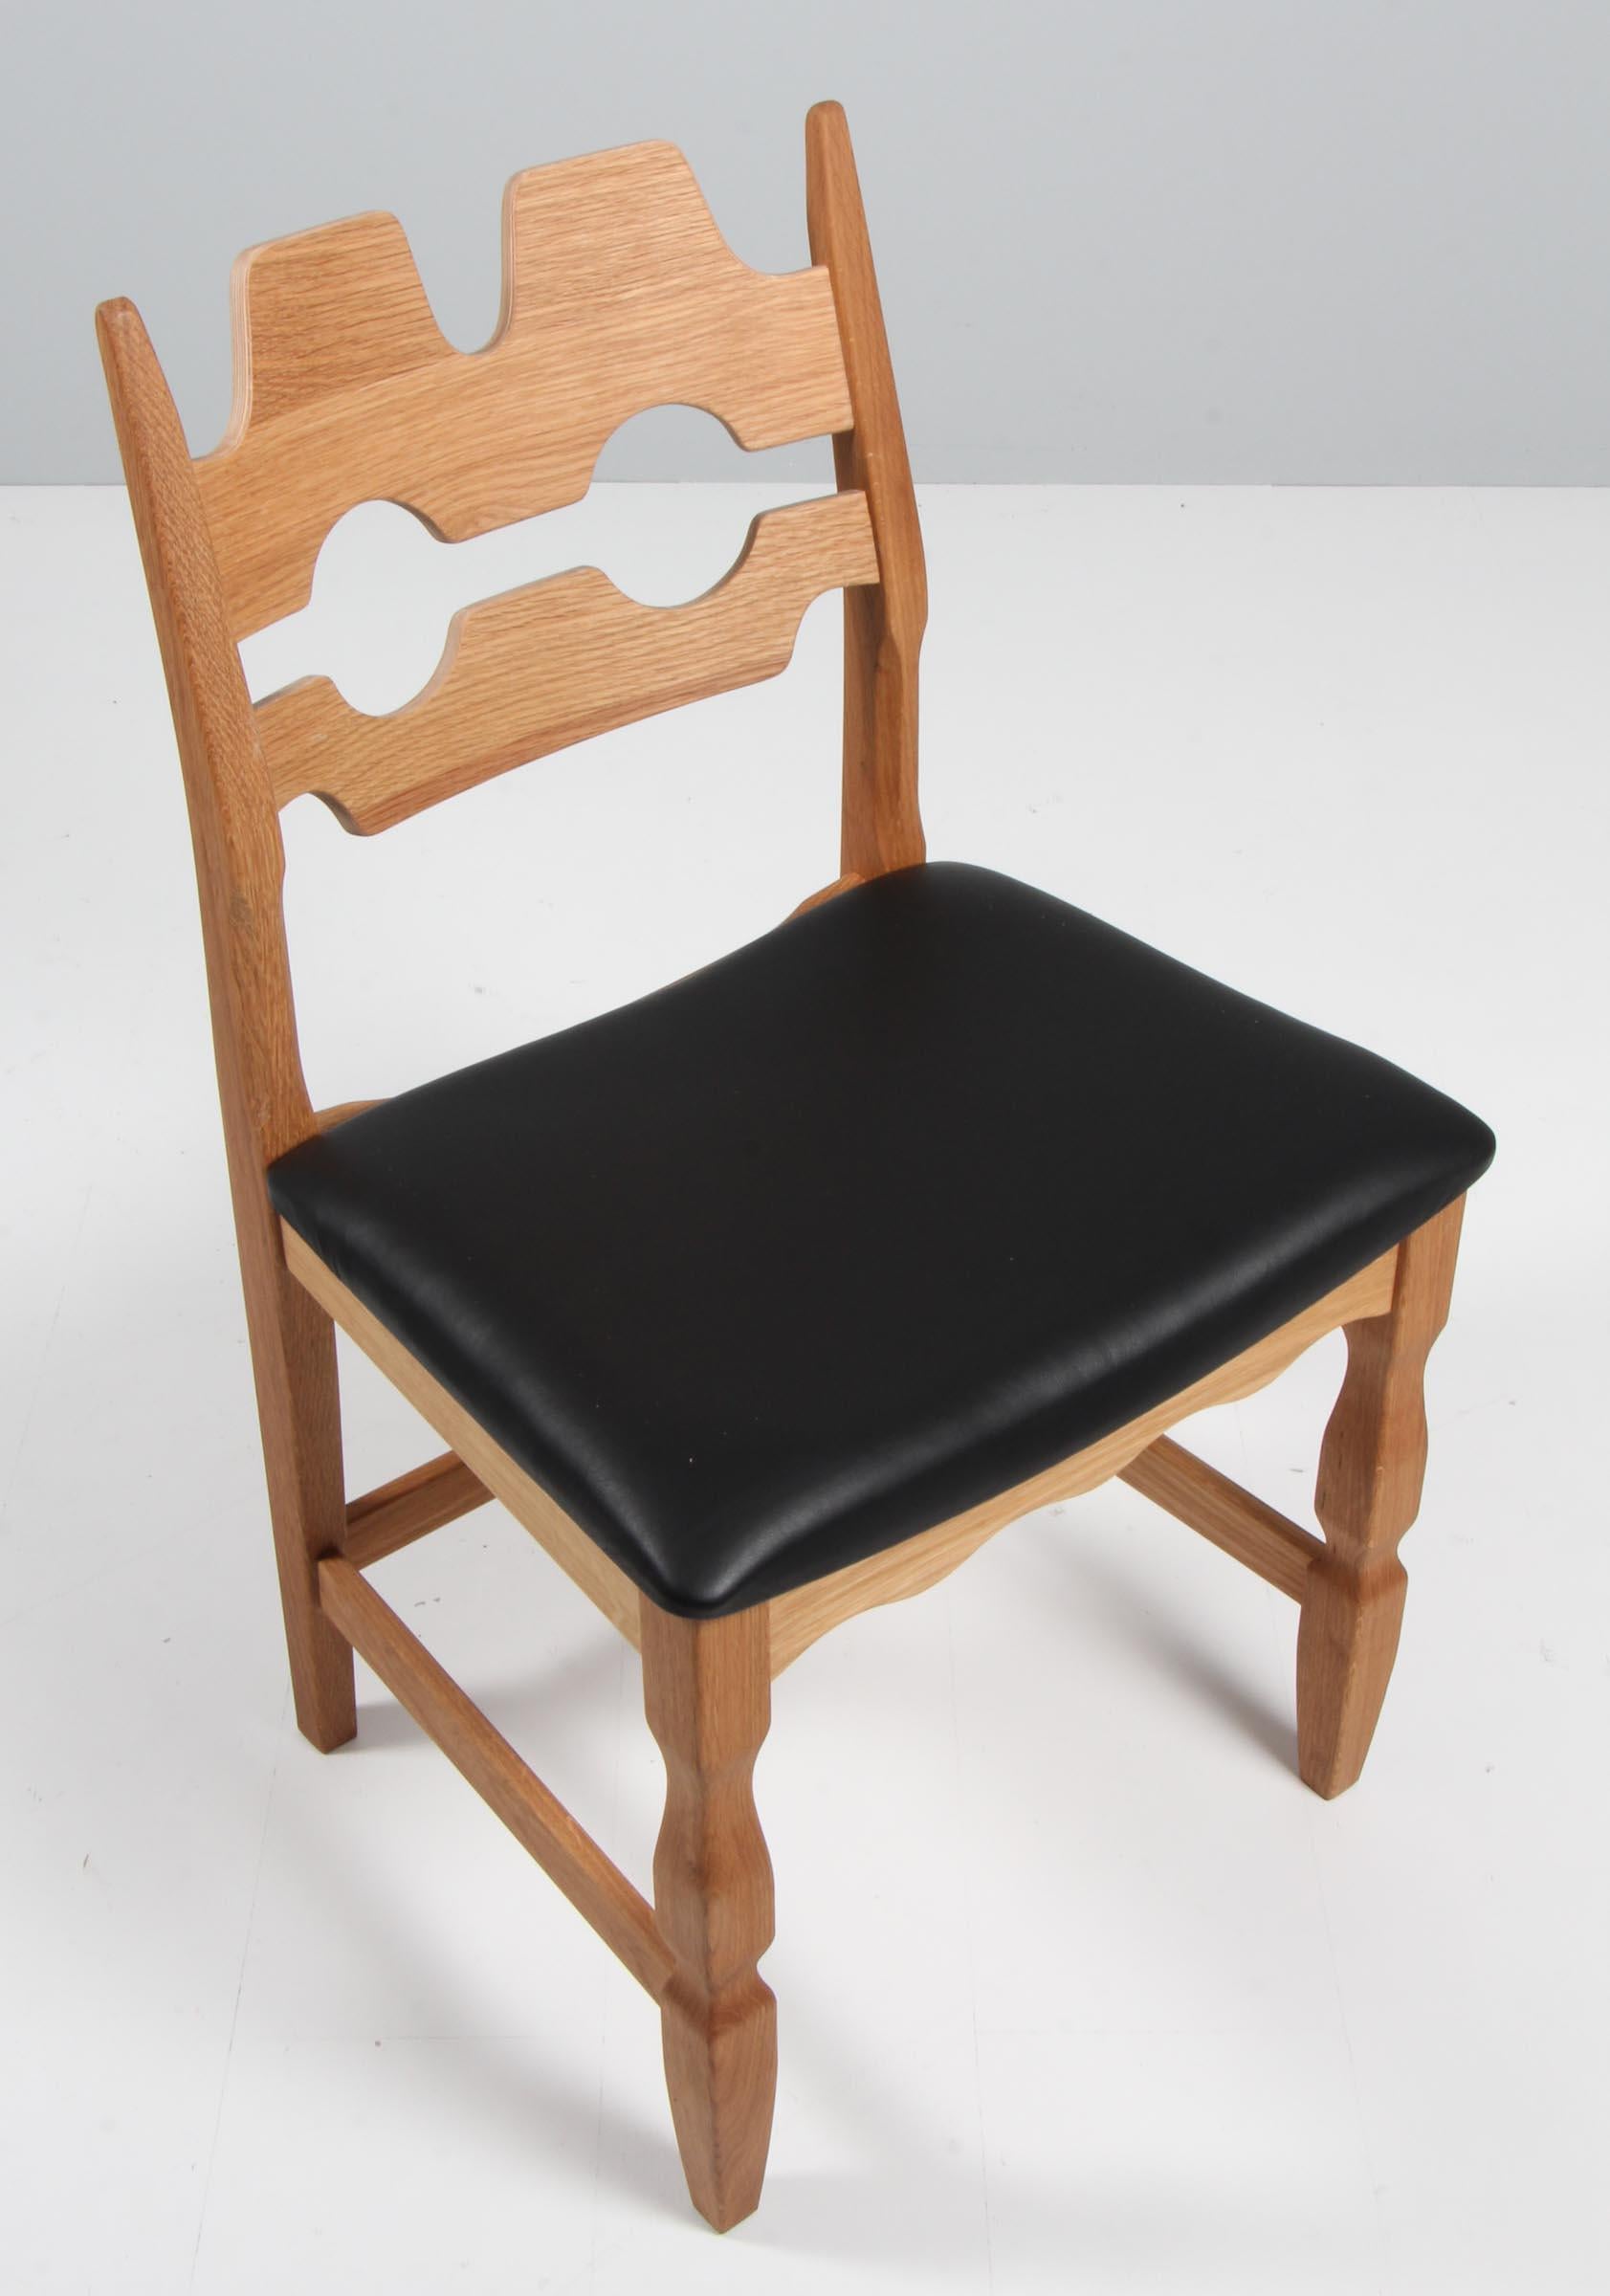 Ensemble de chaises de salle à manger de Henning Kjærnulf, en chêne et cuir pur aniline noir.

Un design rafraîchissant où le baroque audacieux se marie bien avec le modernisme du milieu du siècle.

Modèle : Lame de rasoir

Réalisé par Another